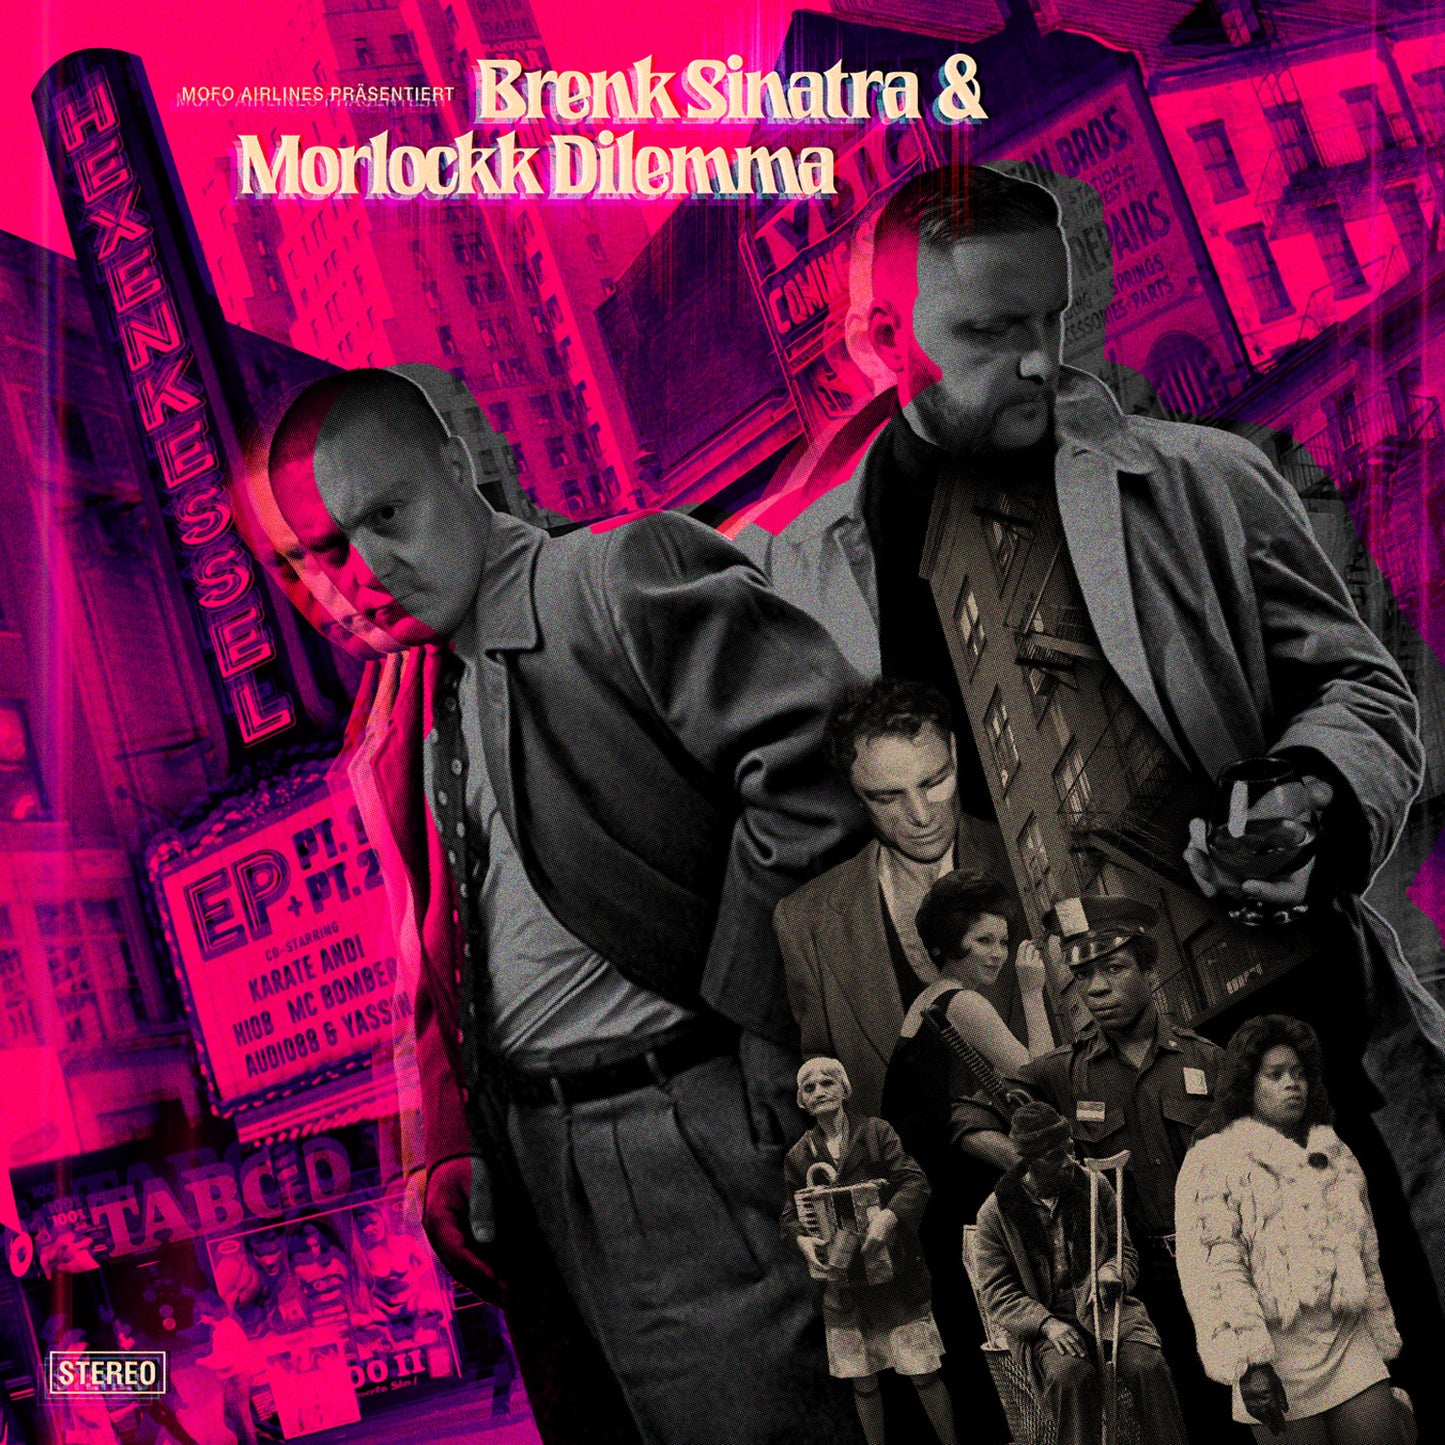 Brenk Sinatra & Morlockk Dilemma - Hexenkessel 1+2 (CD)